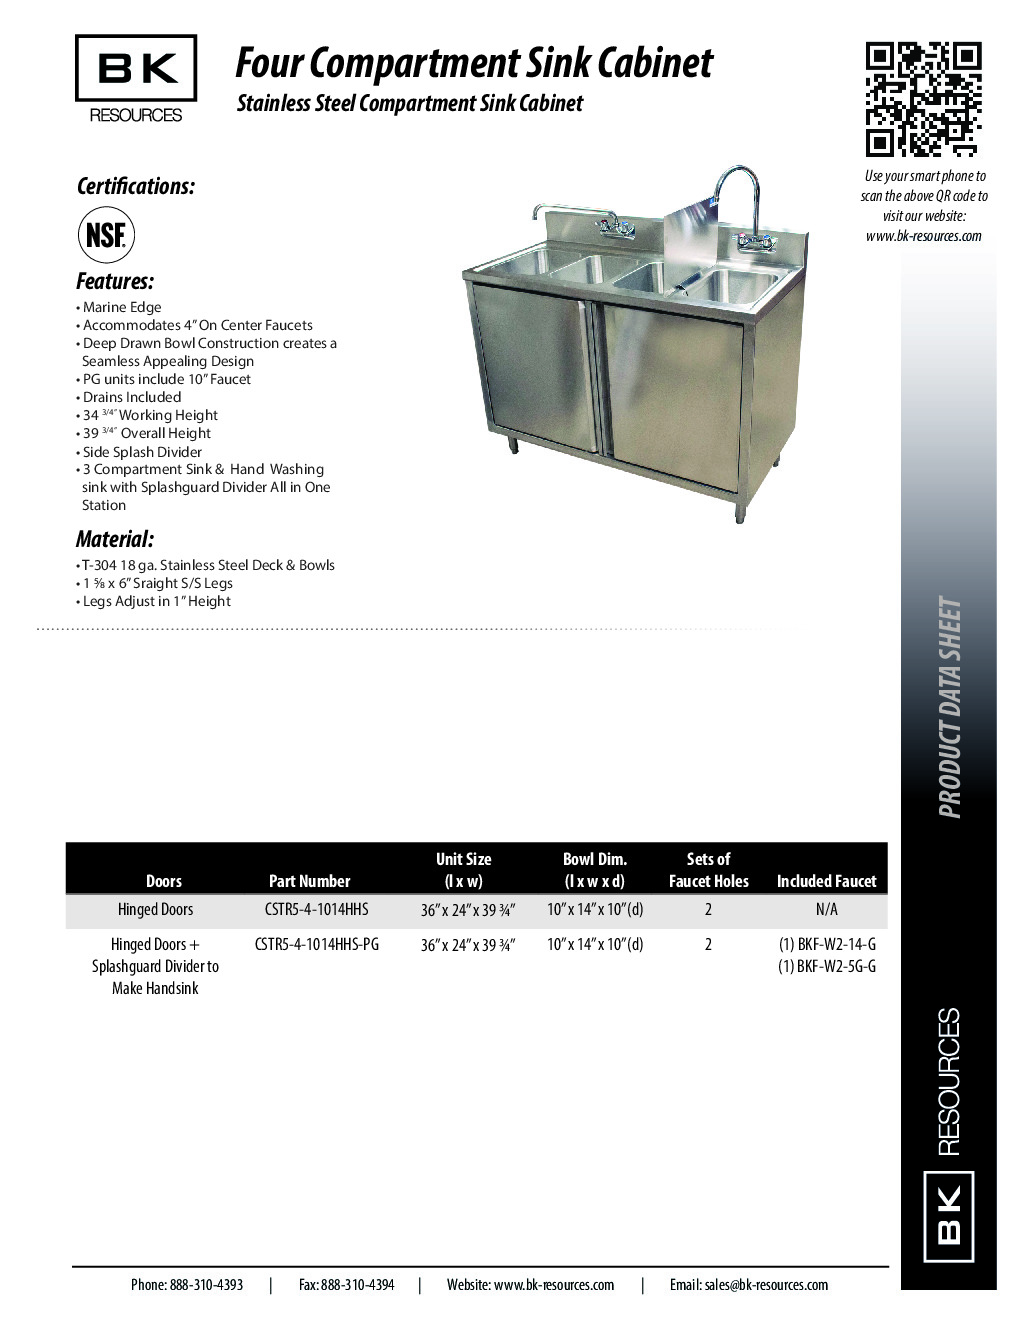 BK Resources CSTR5-4-1014HHS (4) Four Compartment Sink